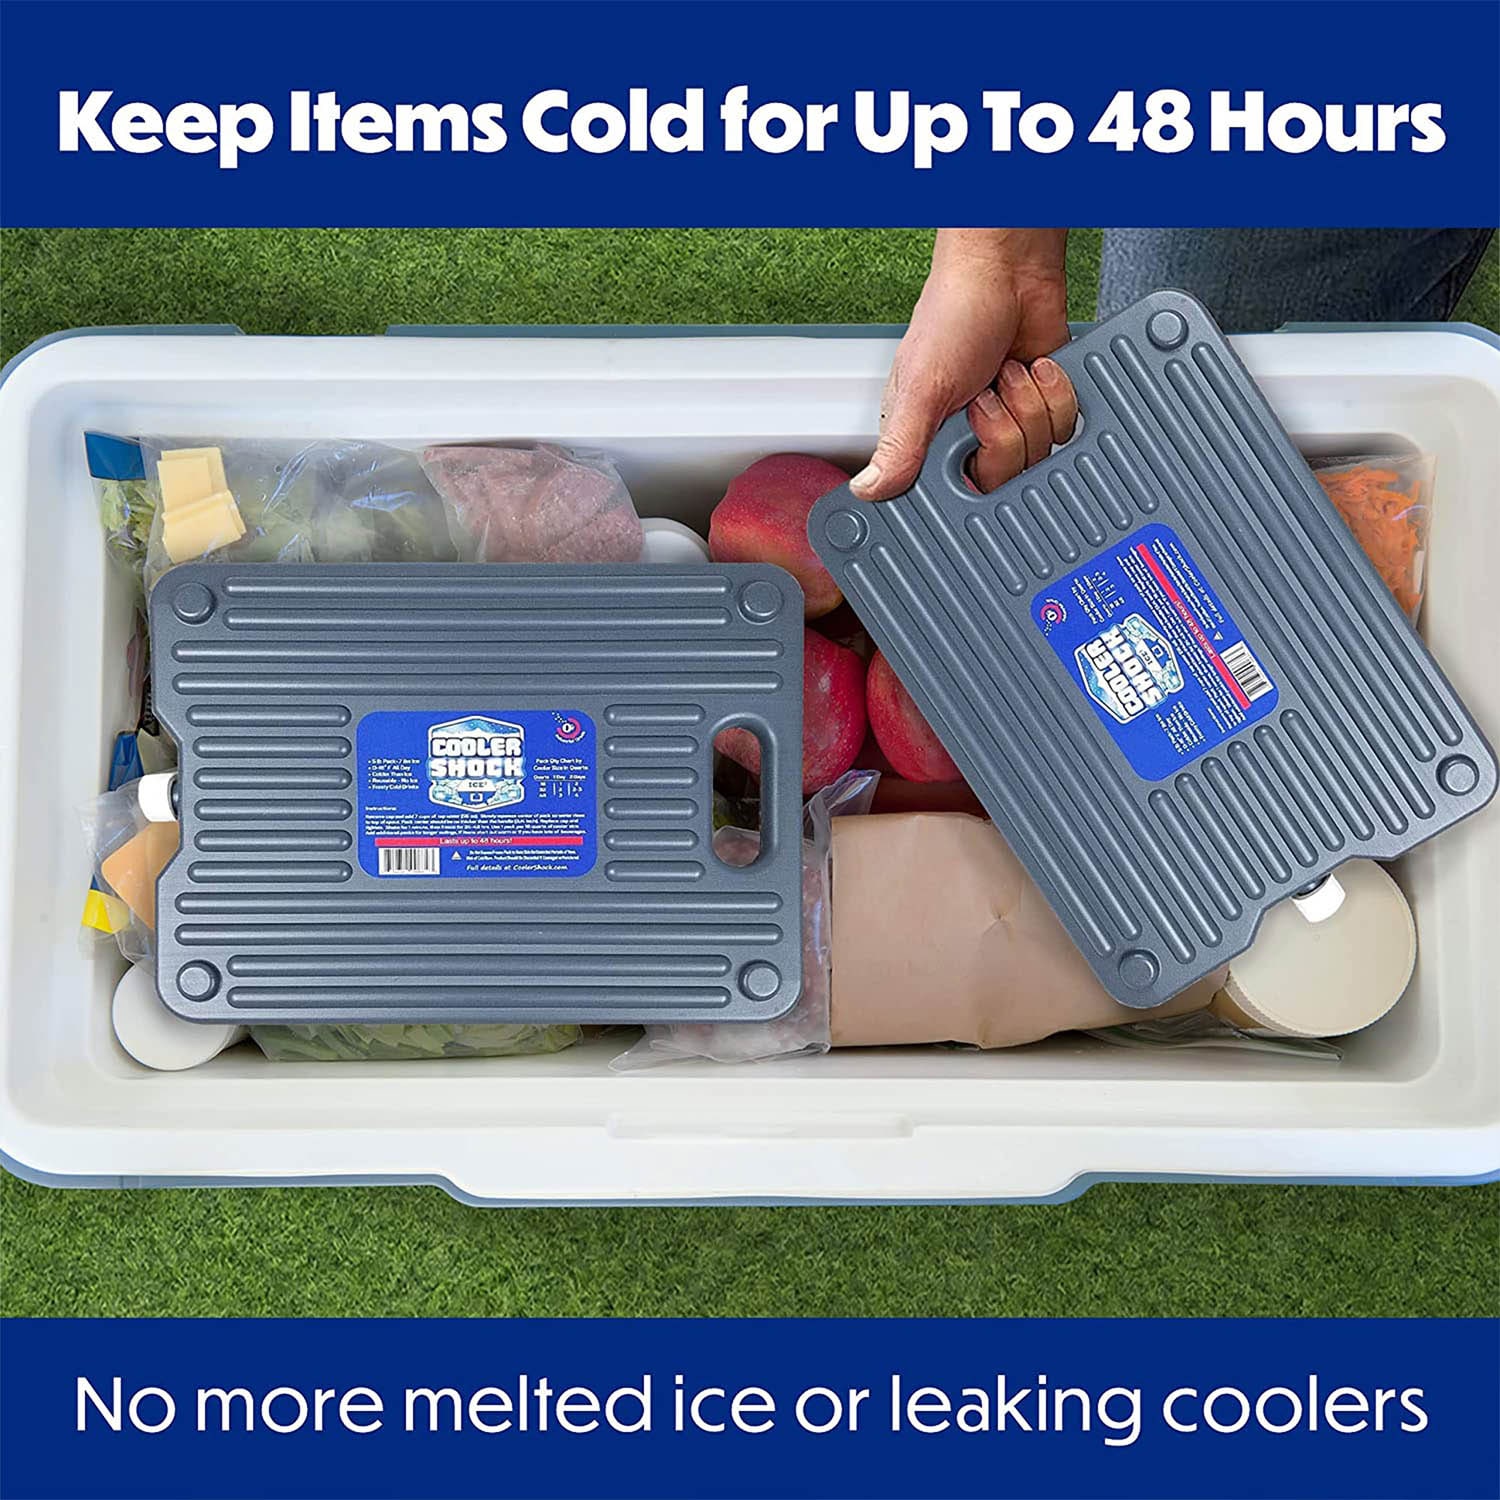 Fermentation Cooler 2.0 and Cooler Shock Ice Pack BUNDLE! – Cool